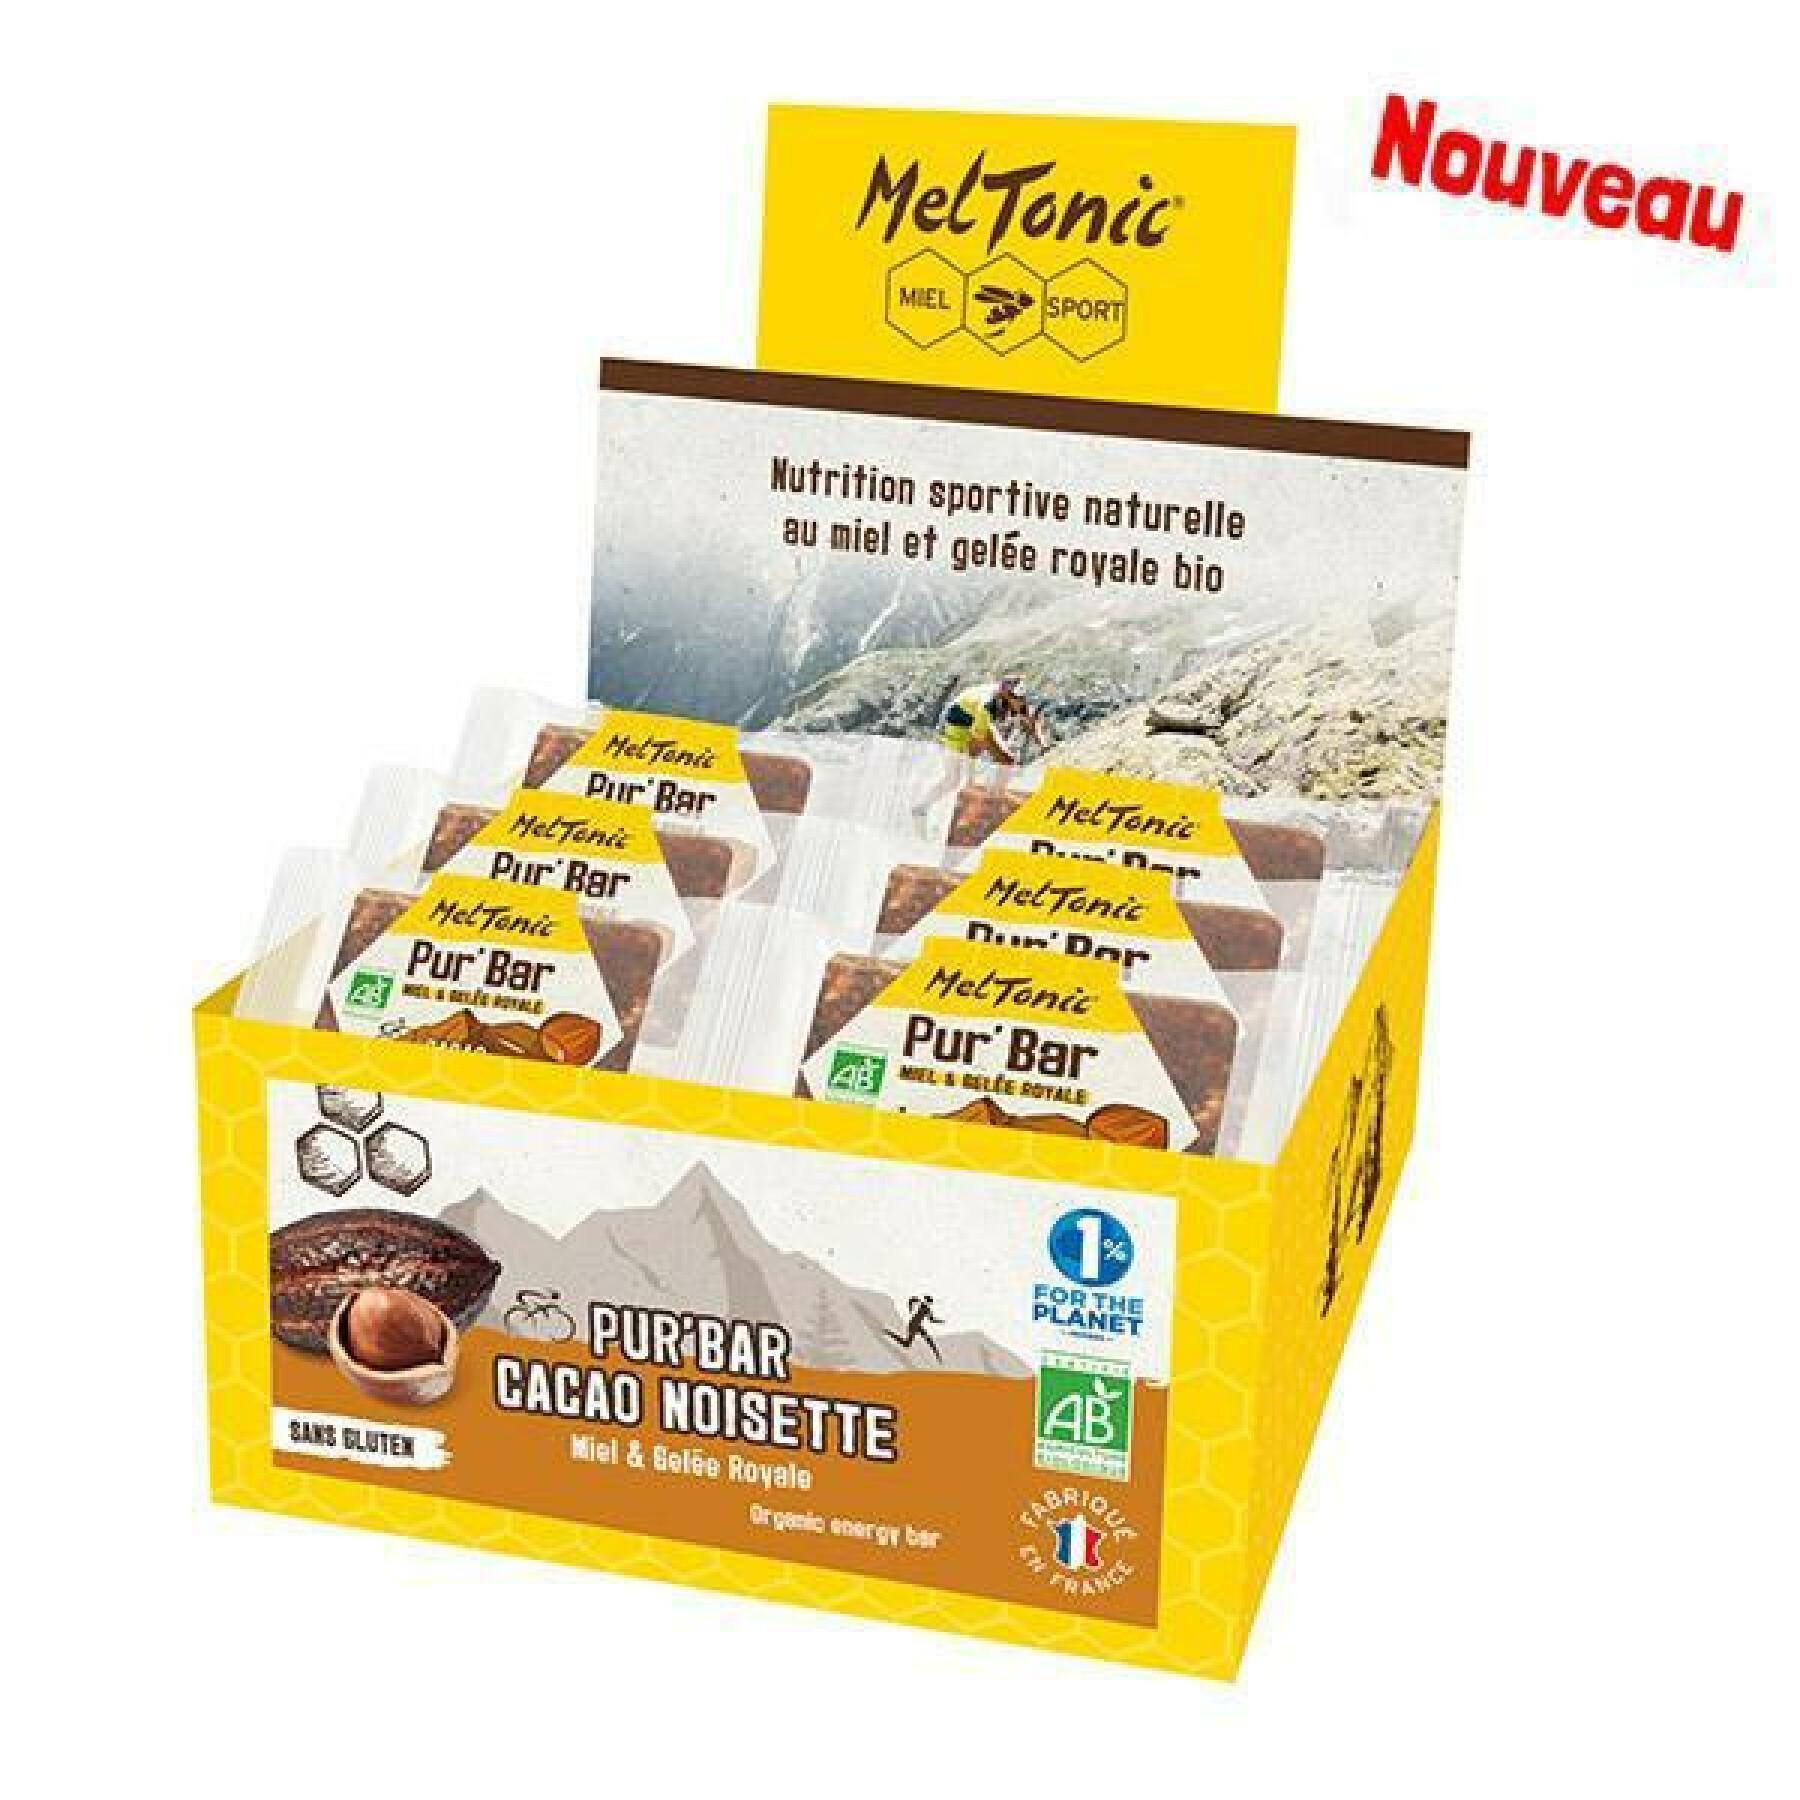 Caja de 12 barritas nutricionales ecológicas cacao avellana miel y jalea real Meltonic Pur 50 g